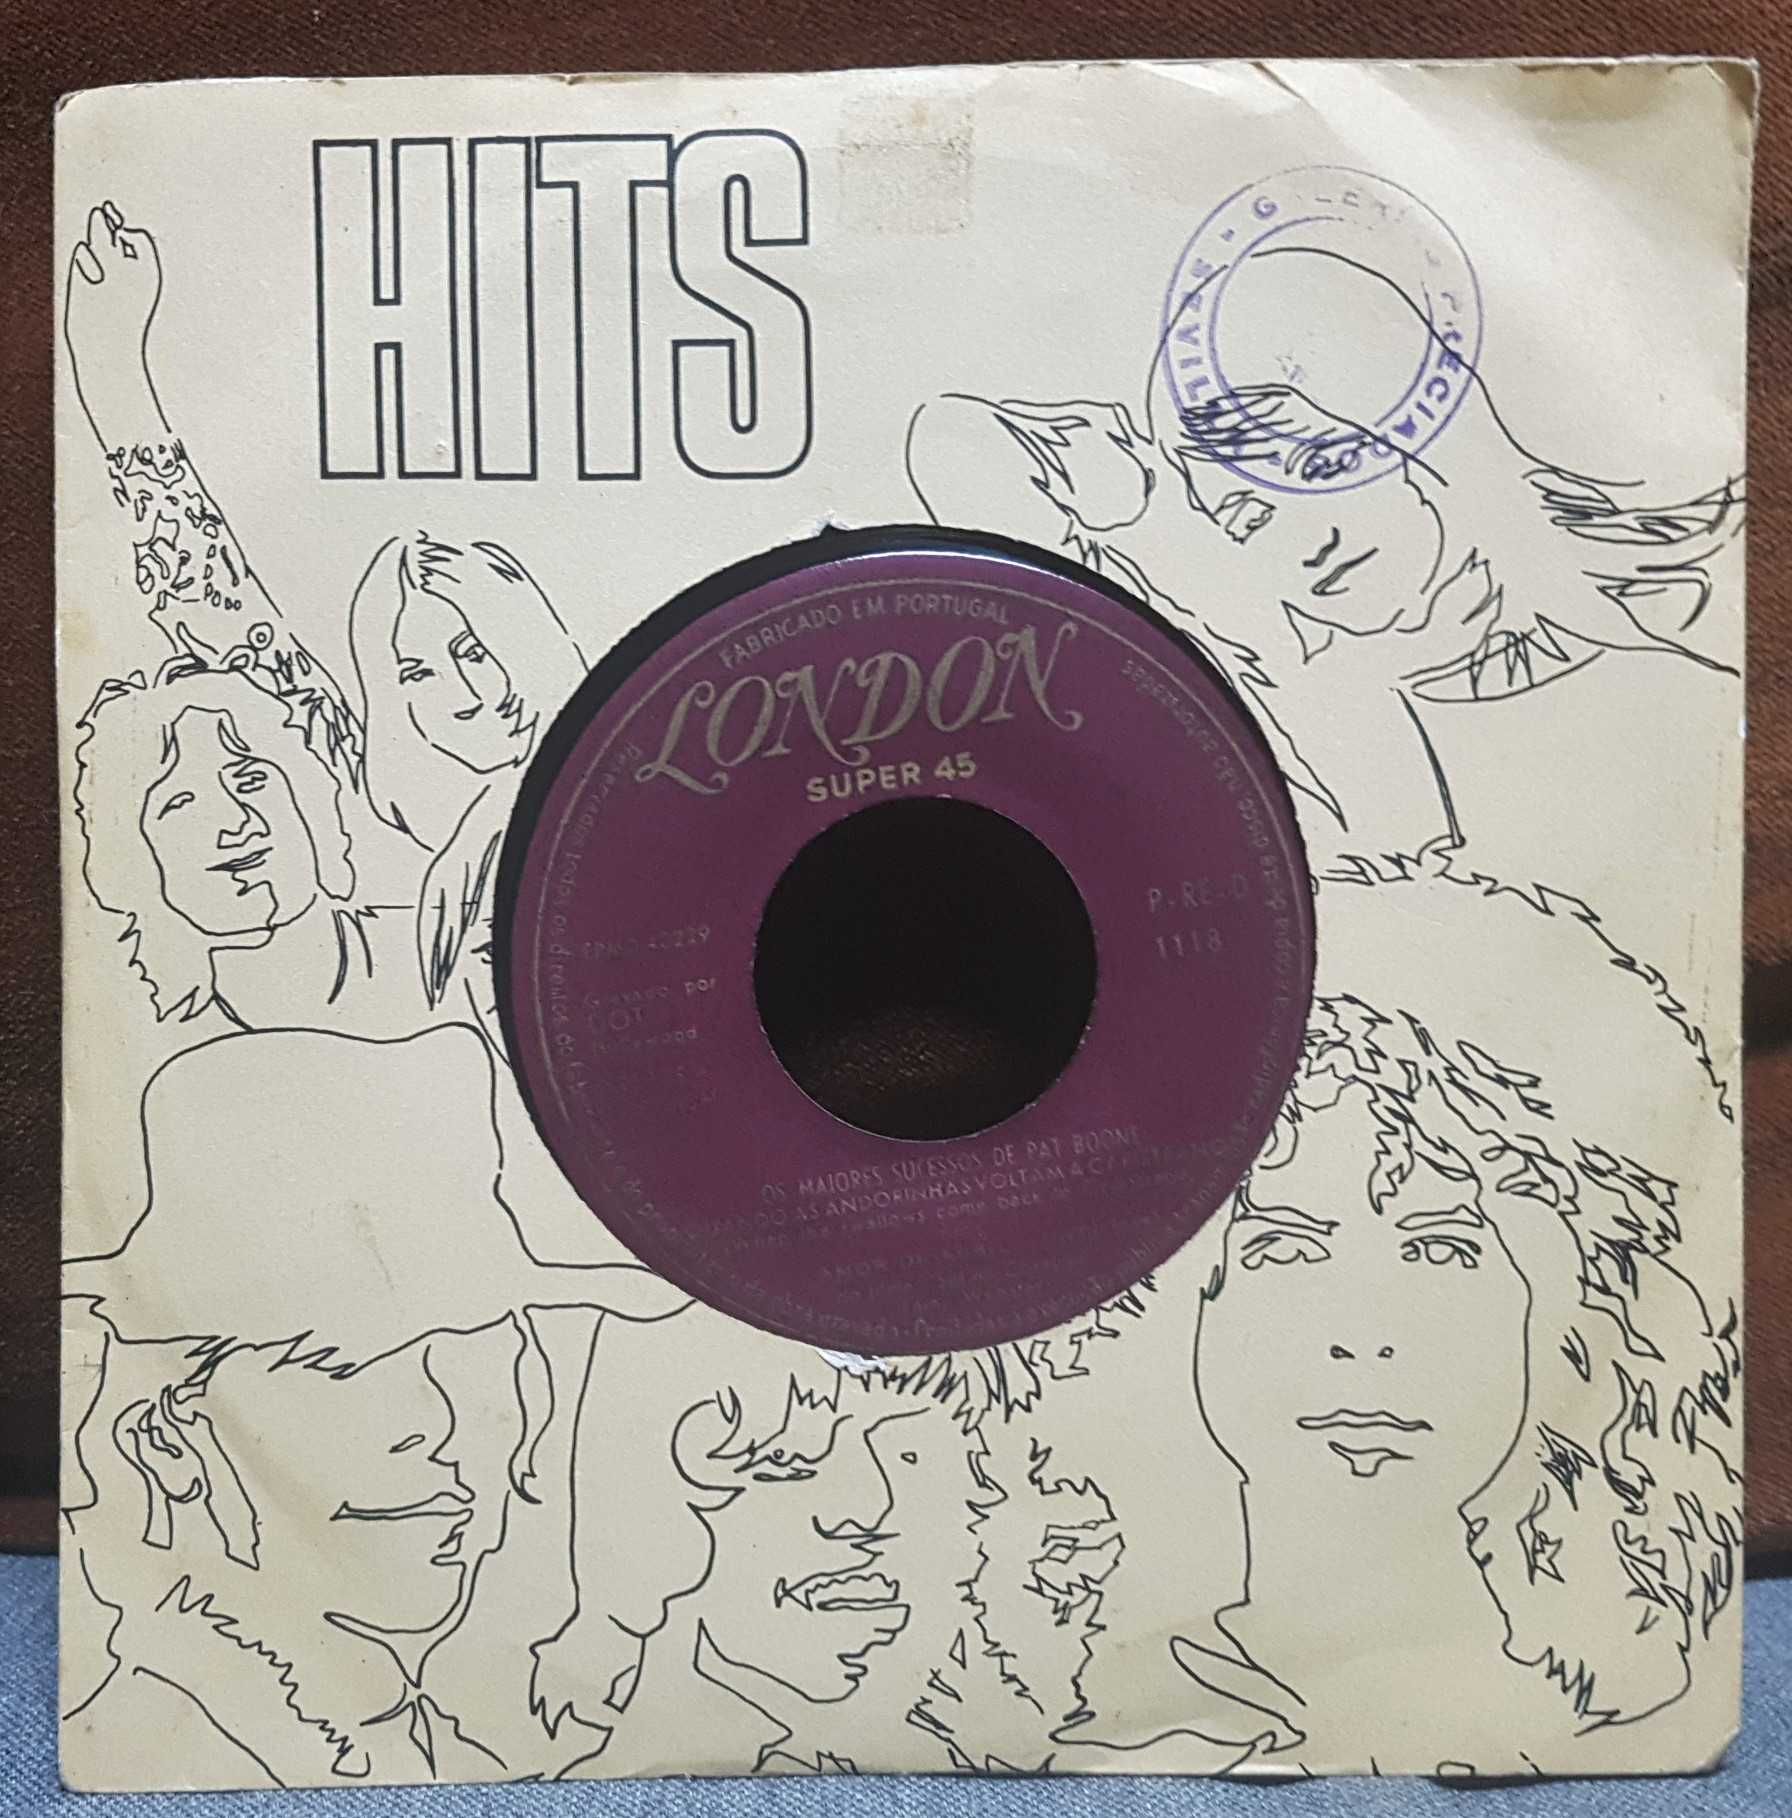 Vinil Pat Boone, Os maiores sucessos EP super 45 1964